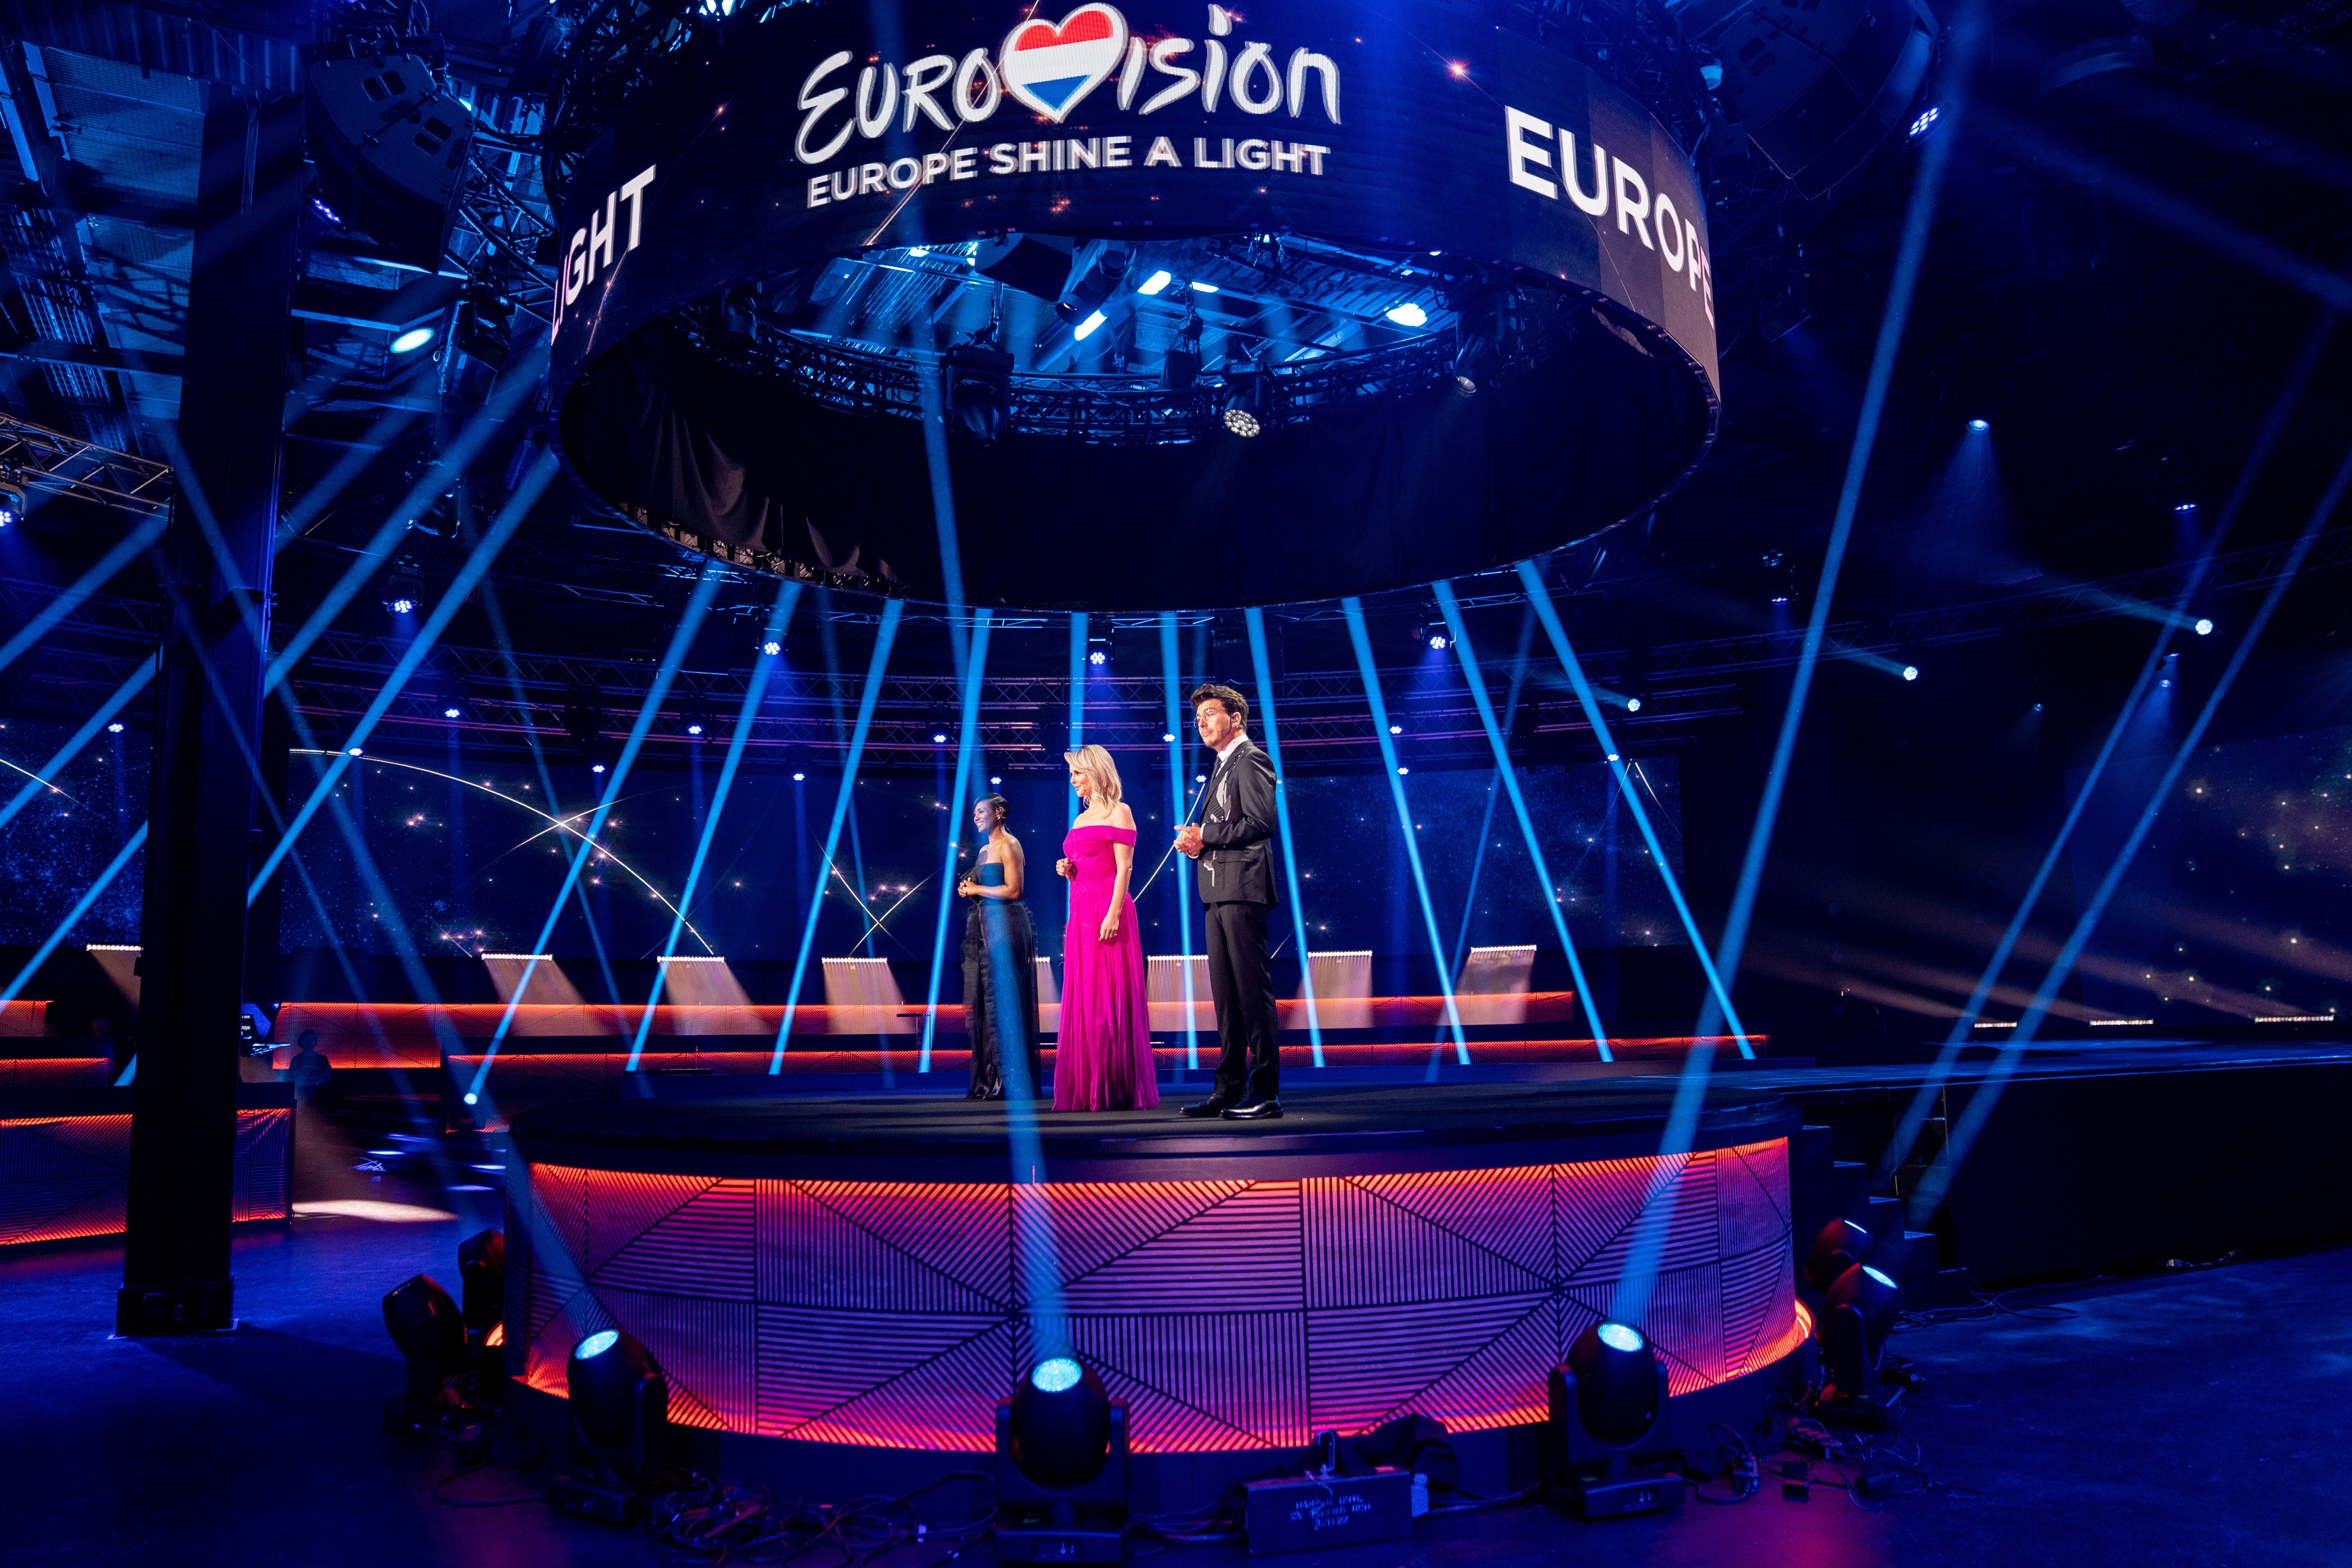 A Eurovision - Europe Shine A Light 2020 gálaműsor műsorvezetői a hilversumi stúdióban - Edsilia Rombley, Chantal Janzen és Jan Smit - Kris Pouw-fotója (EBU)